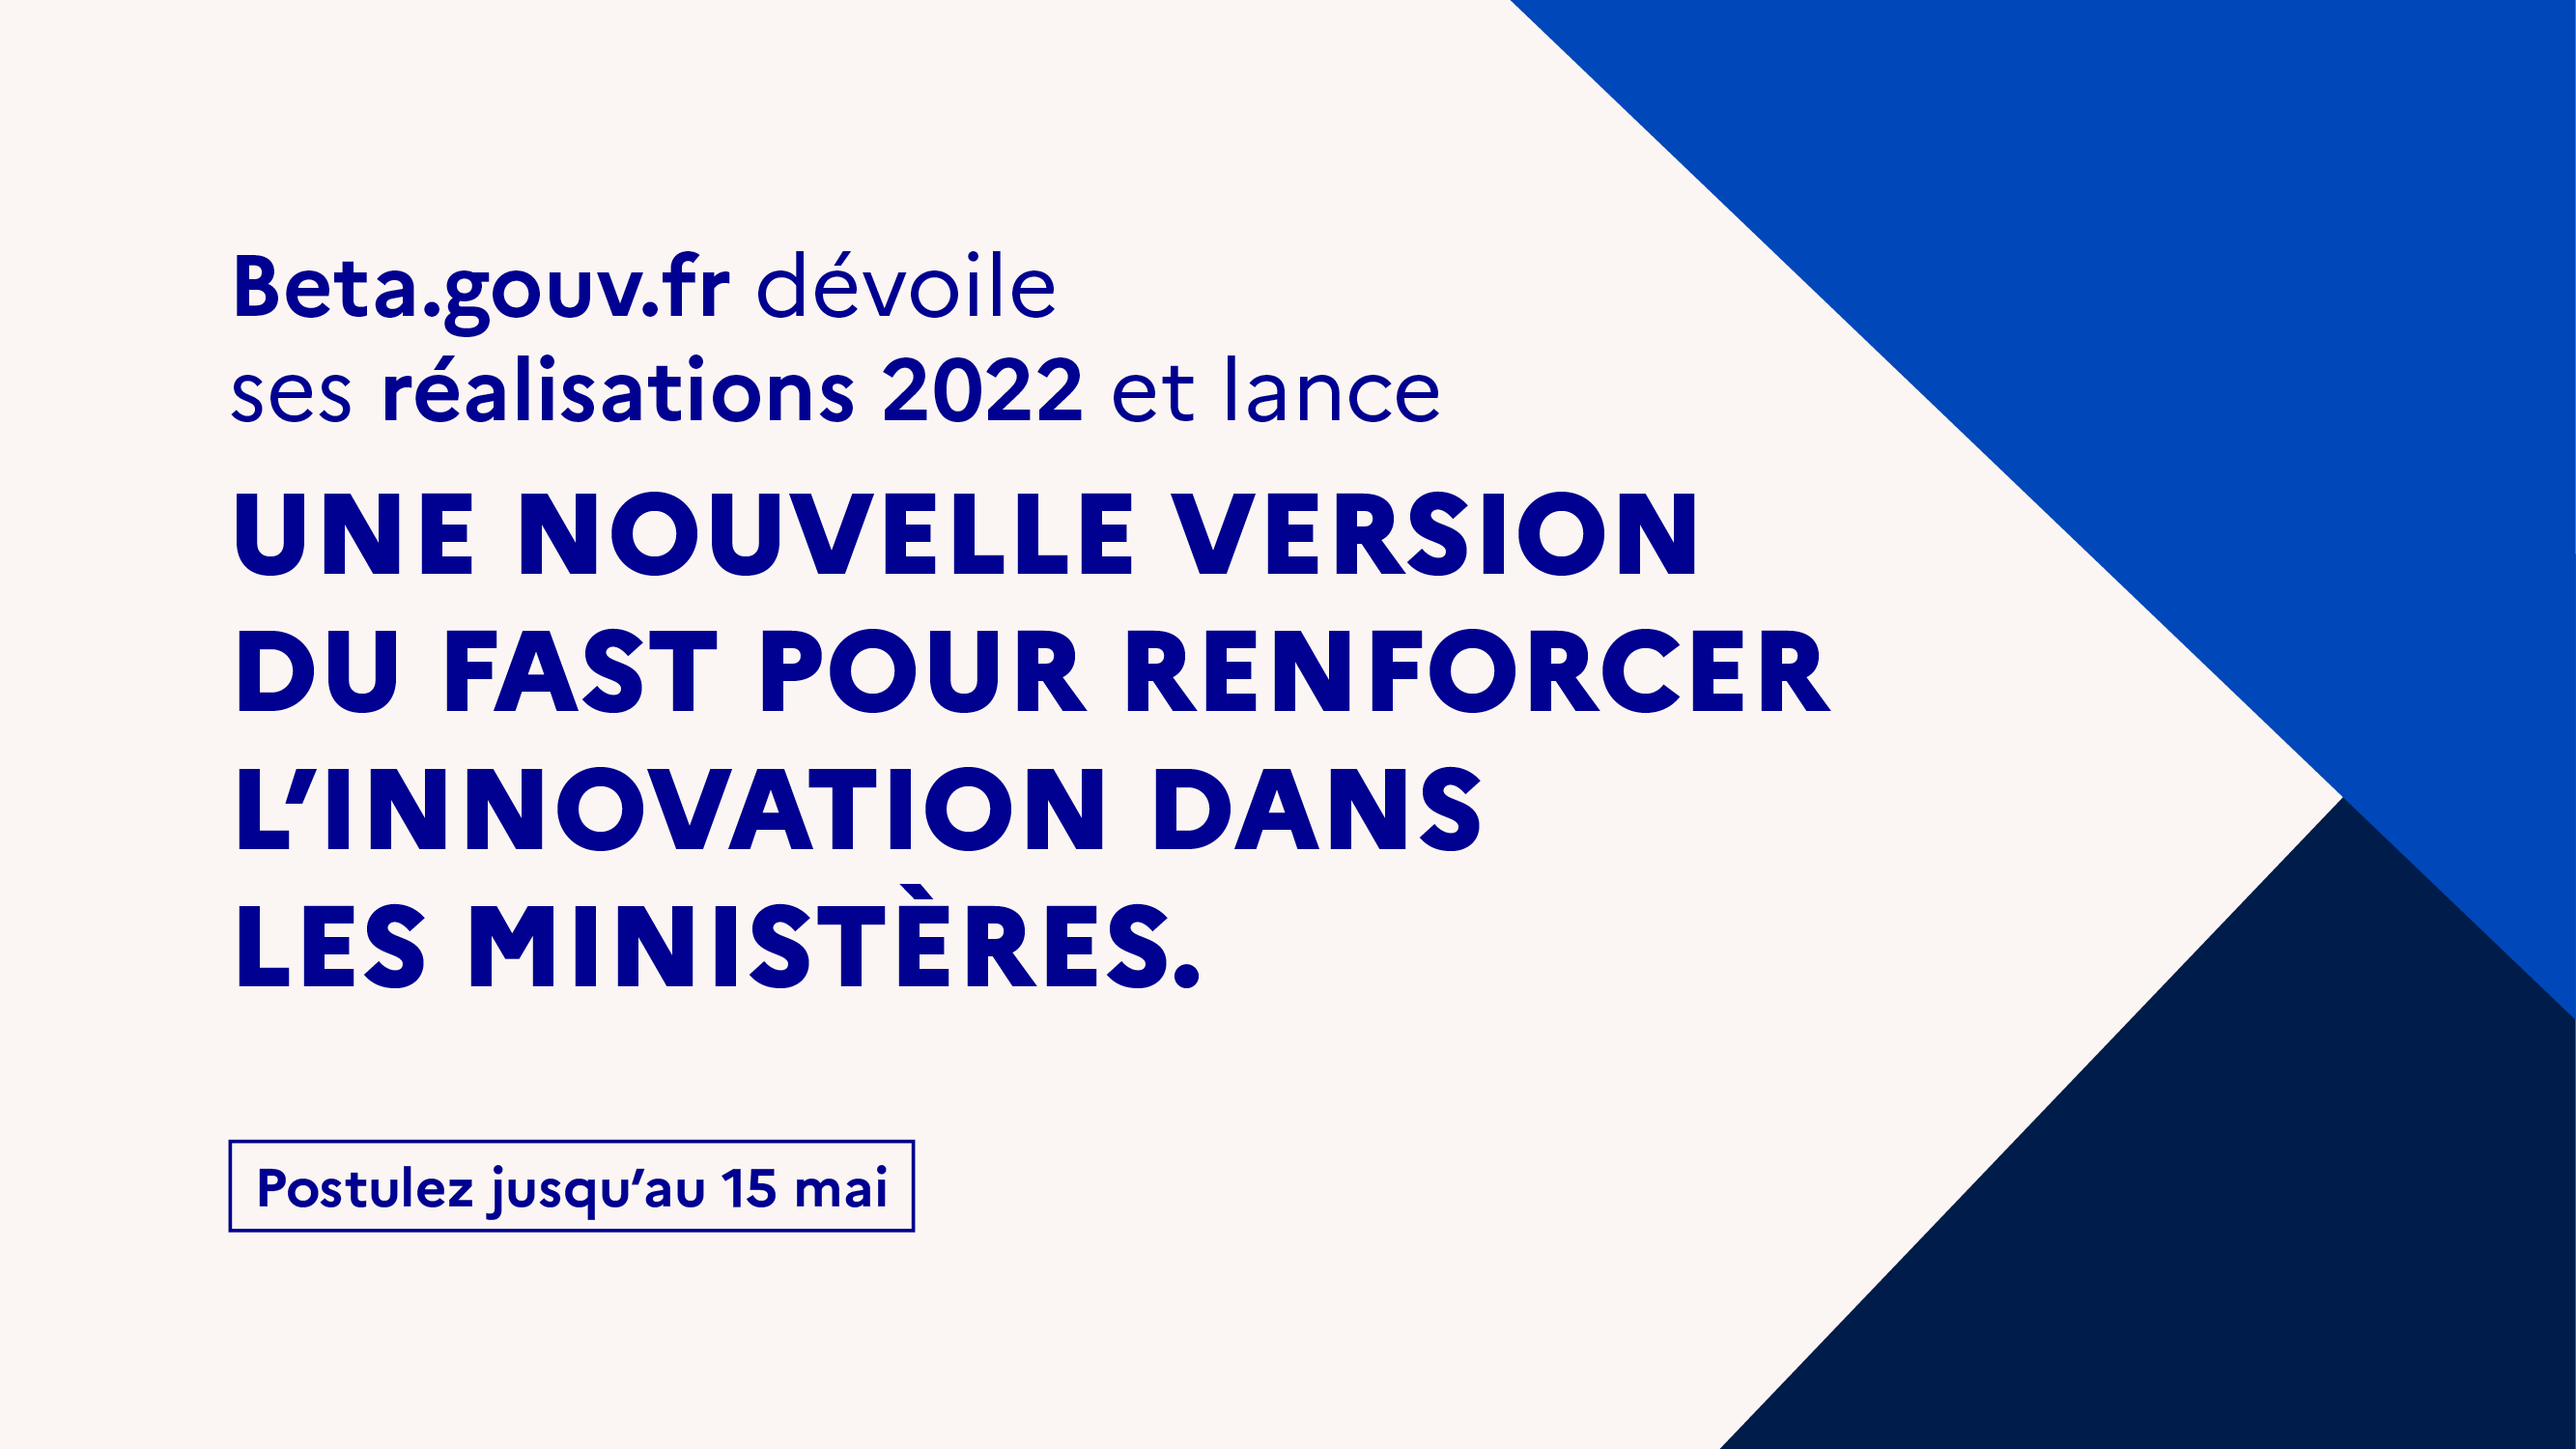 Beta.gouv.fr dévoile ses réalisations 2022 et lance une nouvelle version du FAST pour renforcer l’innovation dans les ministères. Postulez jusqu’au 15 mai.